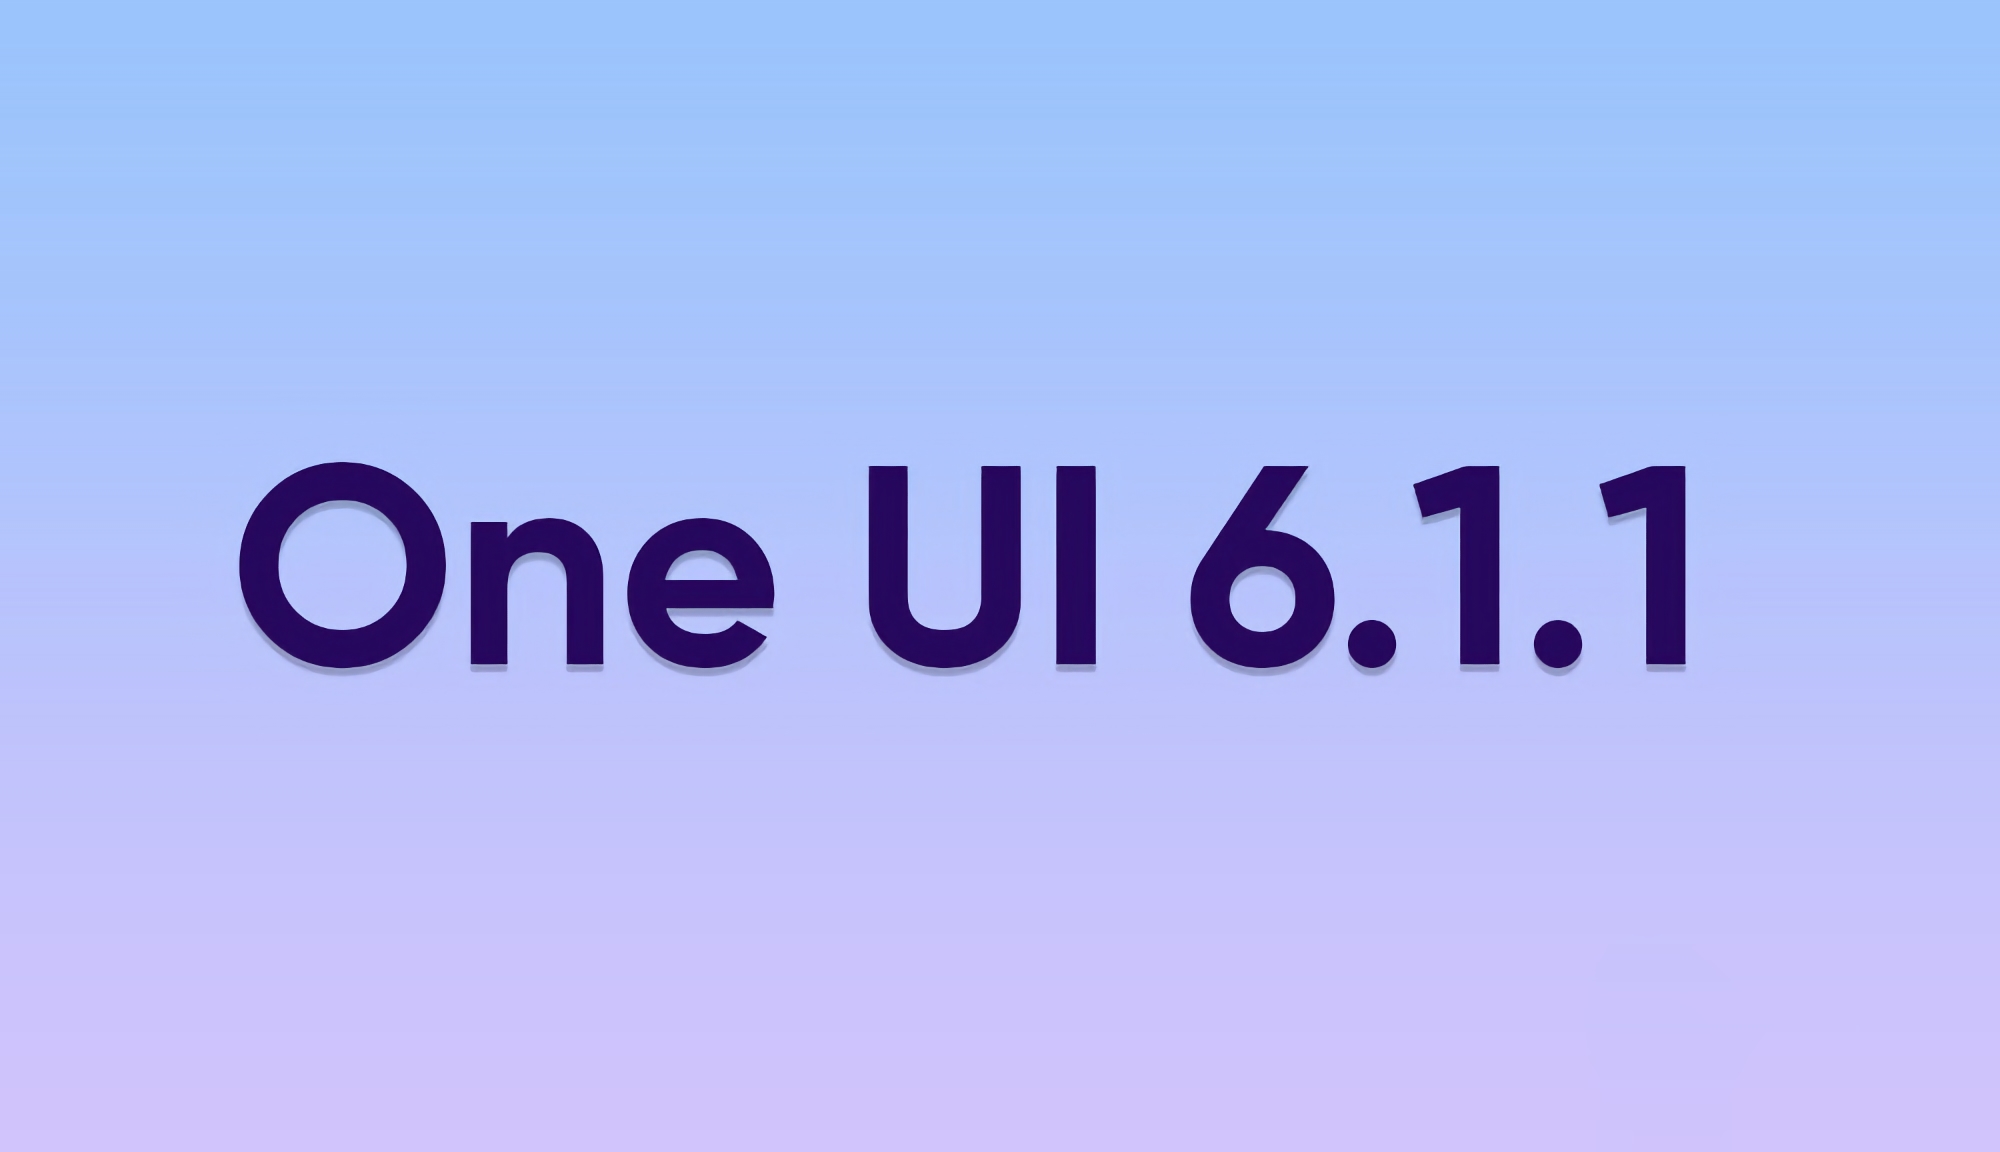 Welche Samsung Galaxy-Smartphones und -Tablets werden das One UI 6.1.1-Update erhalten? 